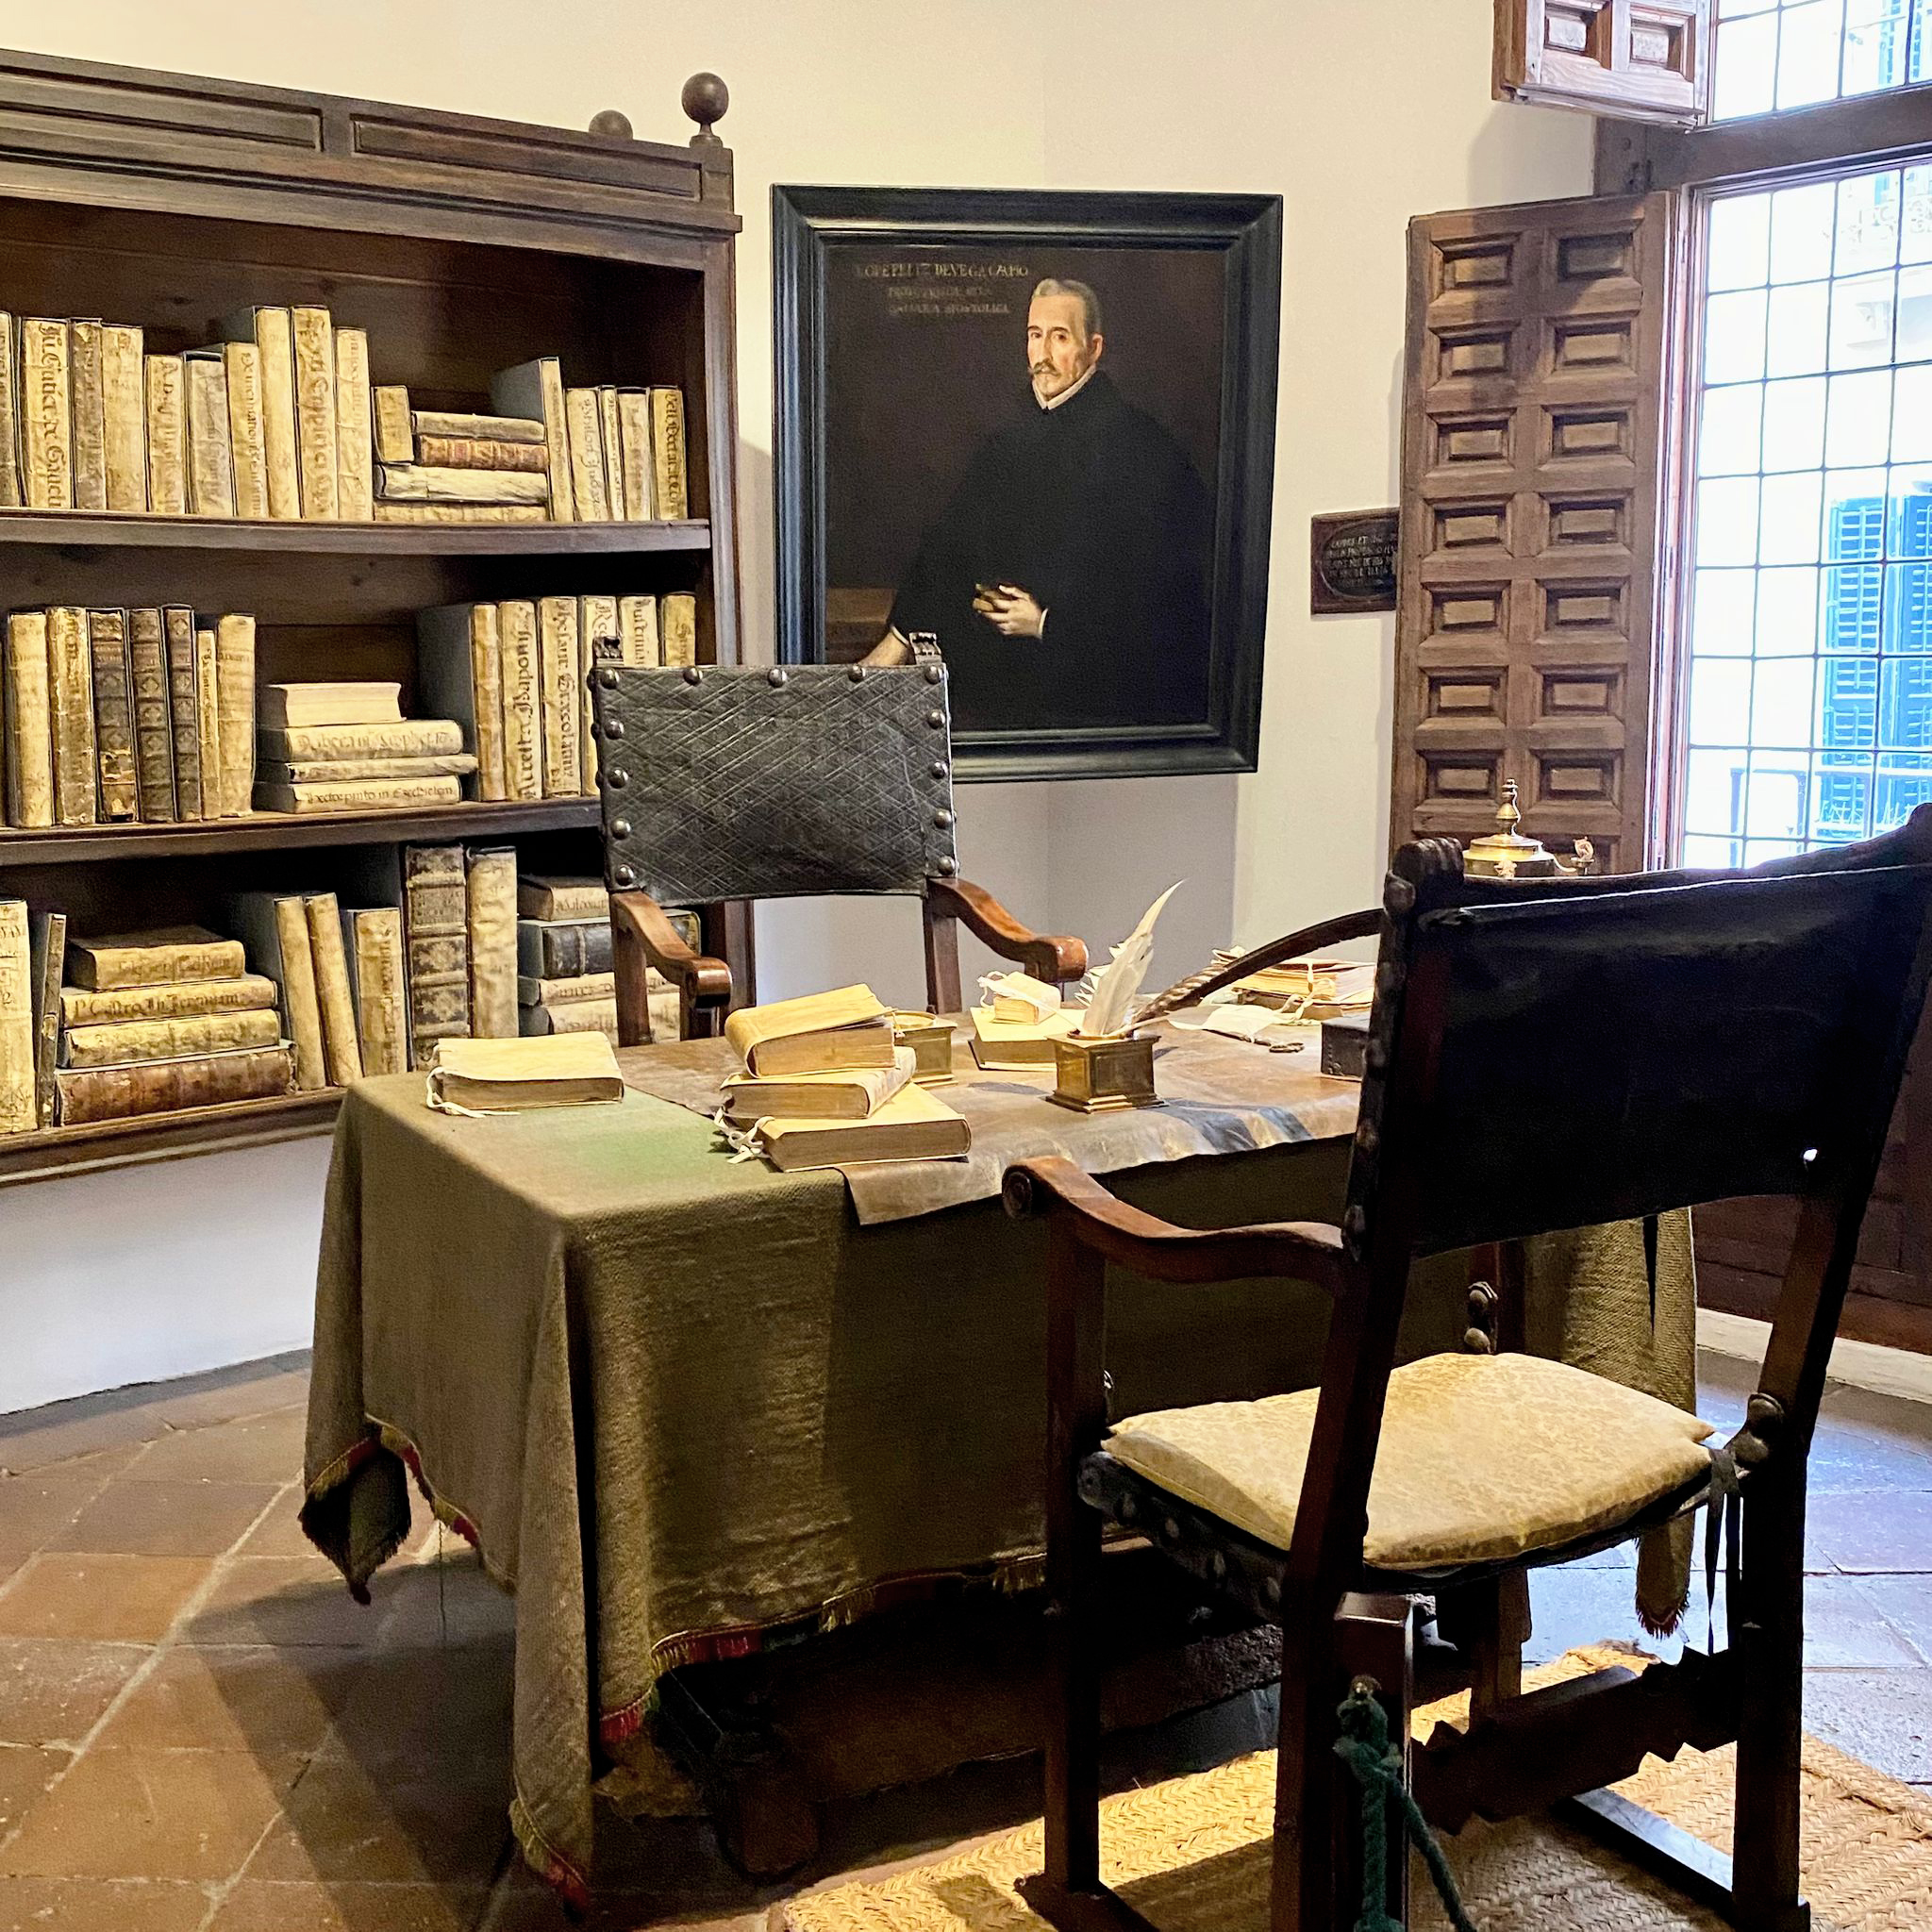 Estancia interior de la Casa Museo Lope de Vega. En ella, un escritorio con manuscritos y una pluma, dos sillas antiguas, una estantería con libros y un retrato de Lope de Vega.